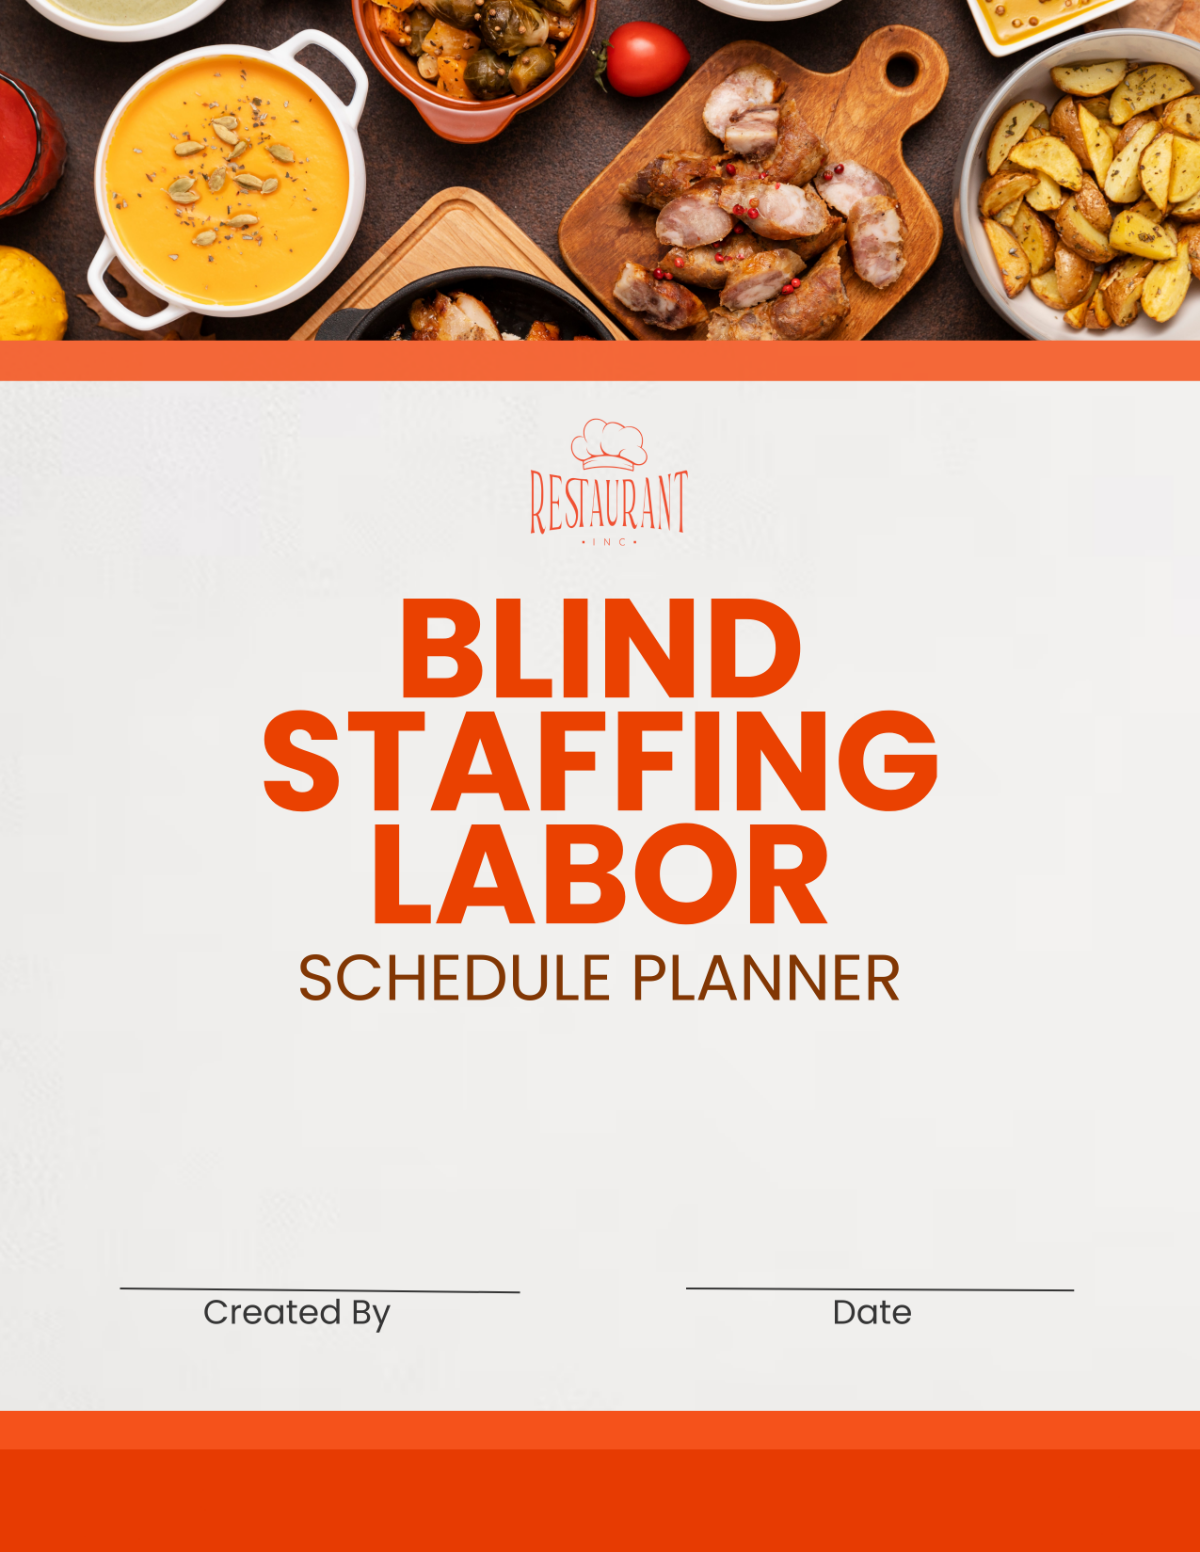 Restaurant Blind Staffing Labor Schedule Planner